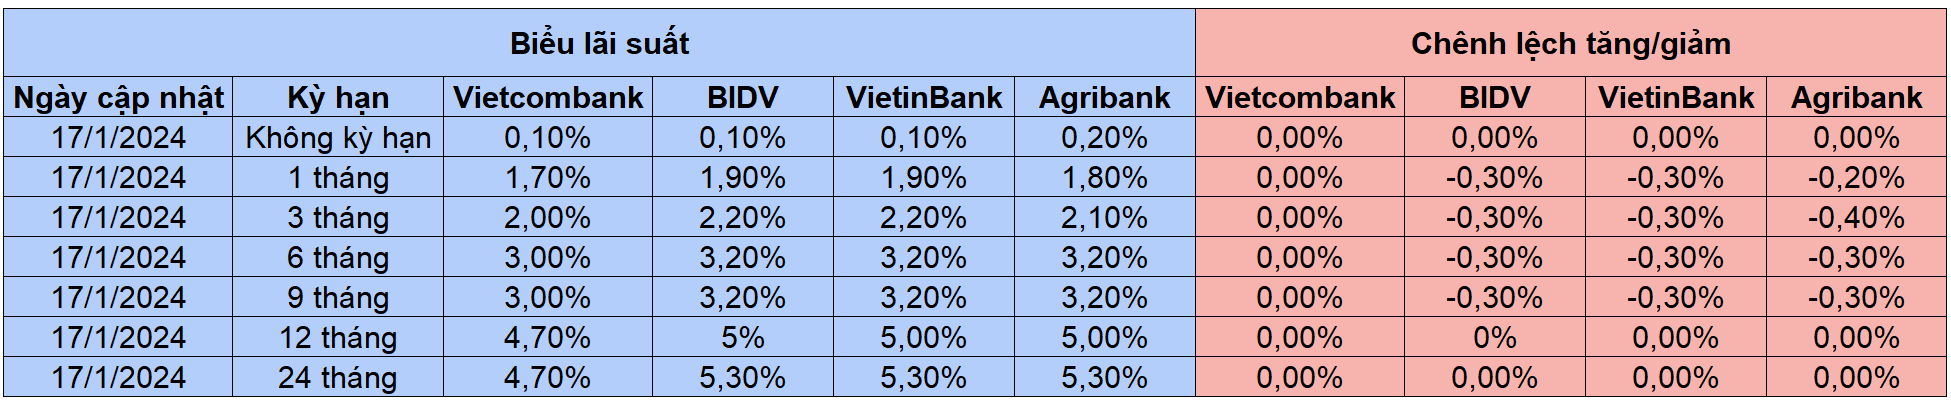 Biểu lãi suất huy động tại các ngân hàng thuộc nhóm 'Big 4'